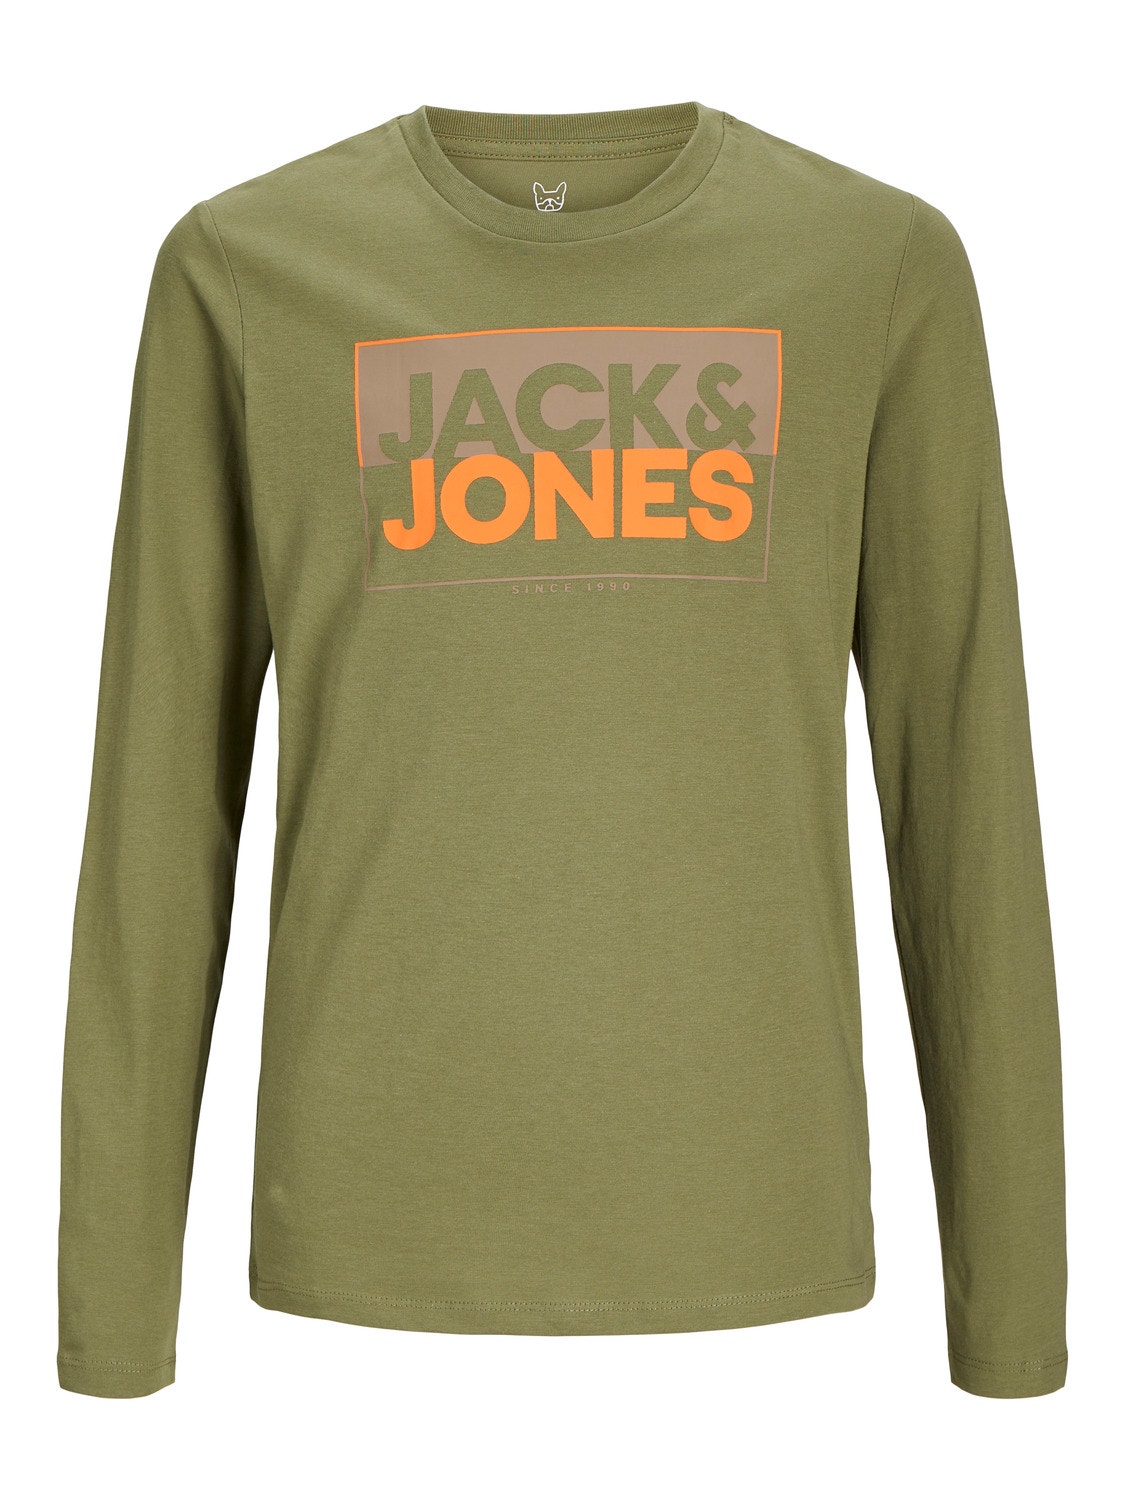 Jack & Jones Logo T-shirt Für jungs -Olive Branch - 12251462